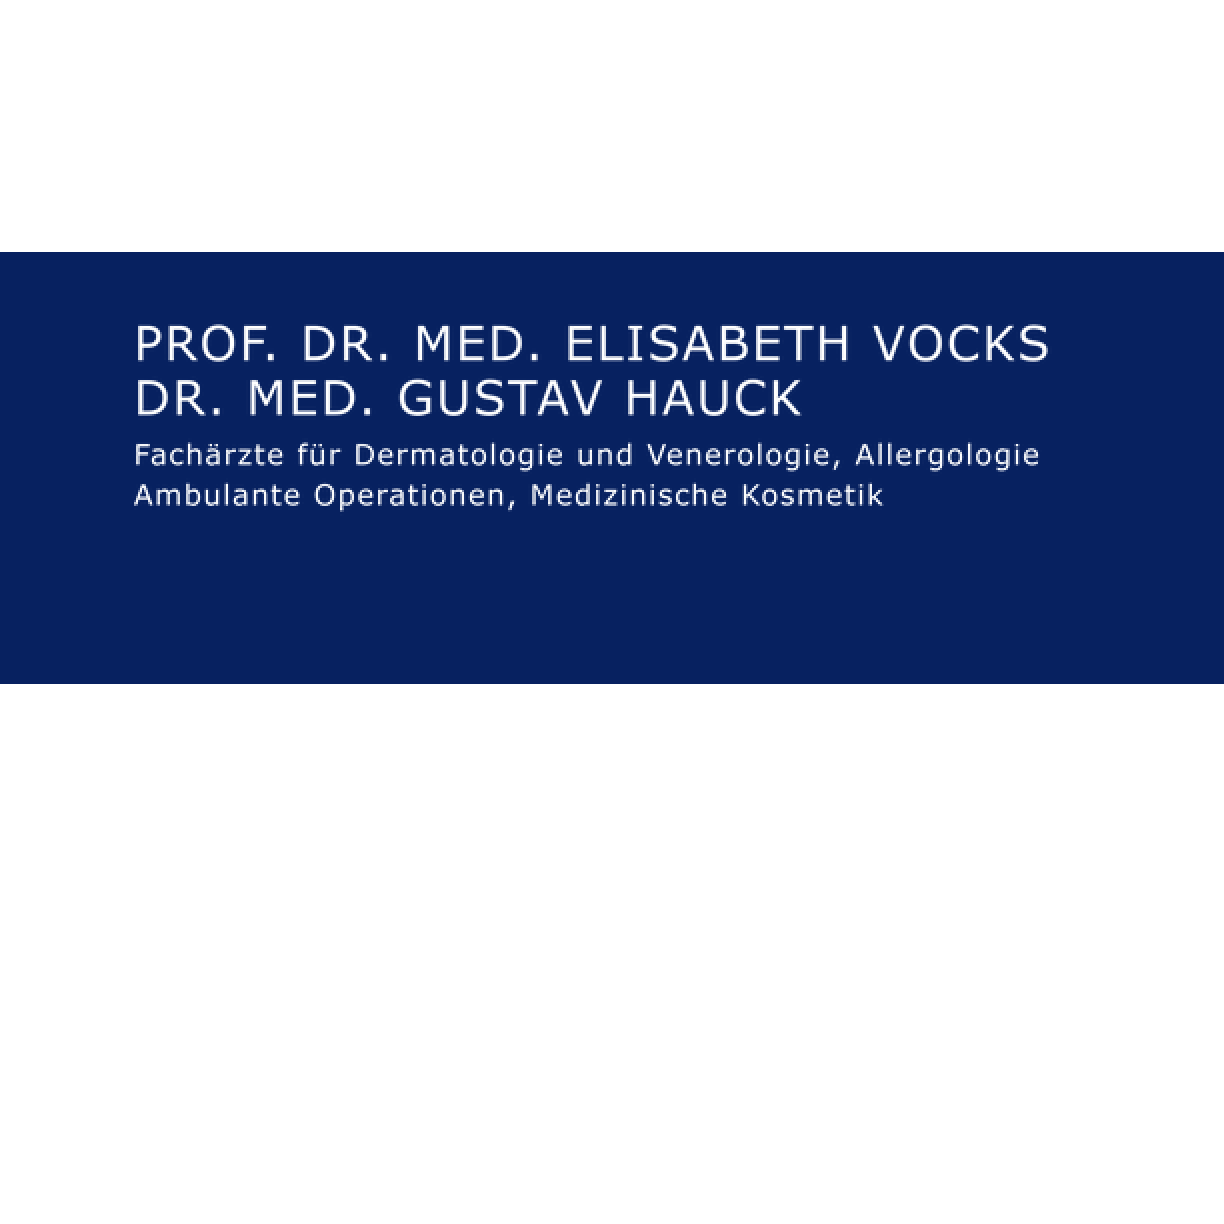 Dermatologische Gemeinschaftspraxis Prof. Dr. med. Elisabeth Vocks und Dr. med. Gustav Hauck München in München - Logo